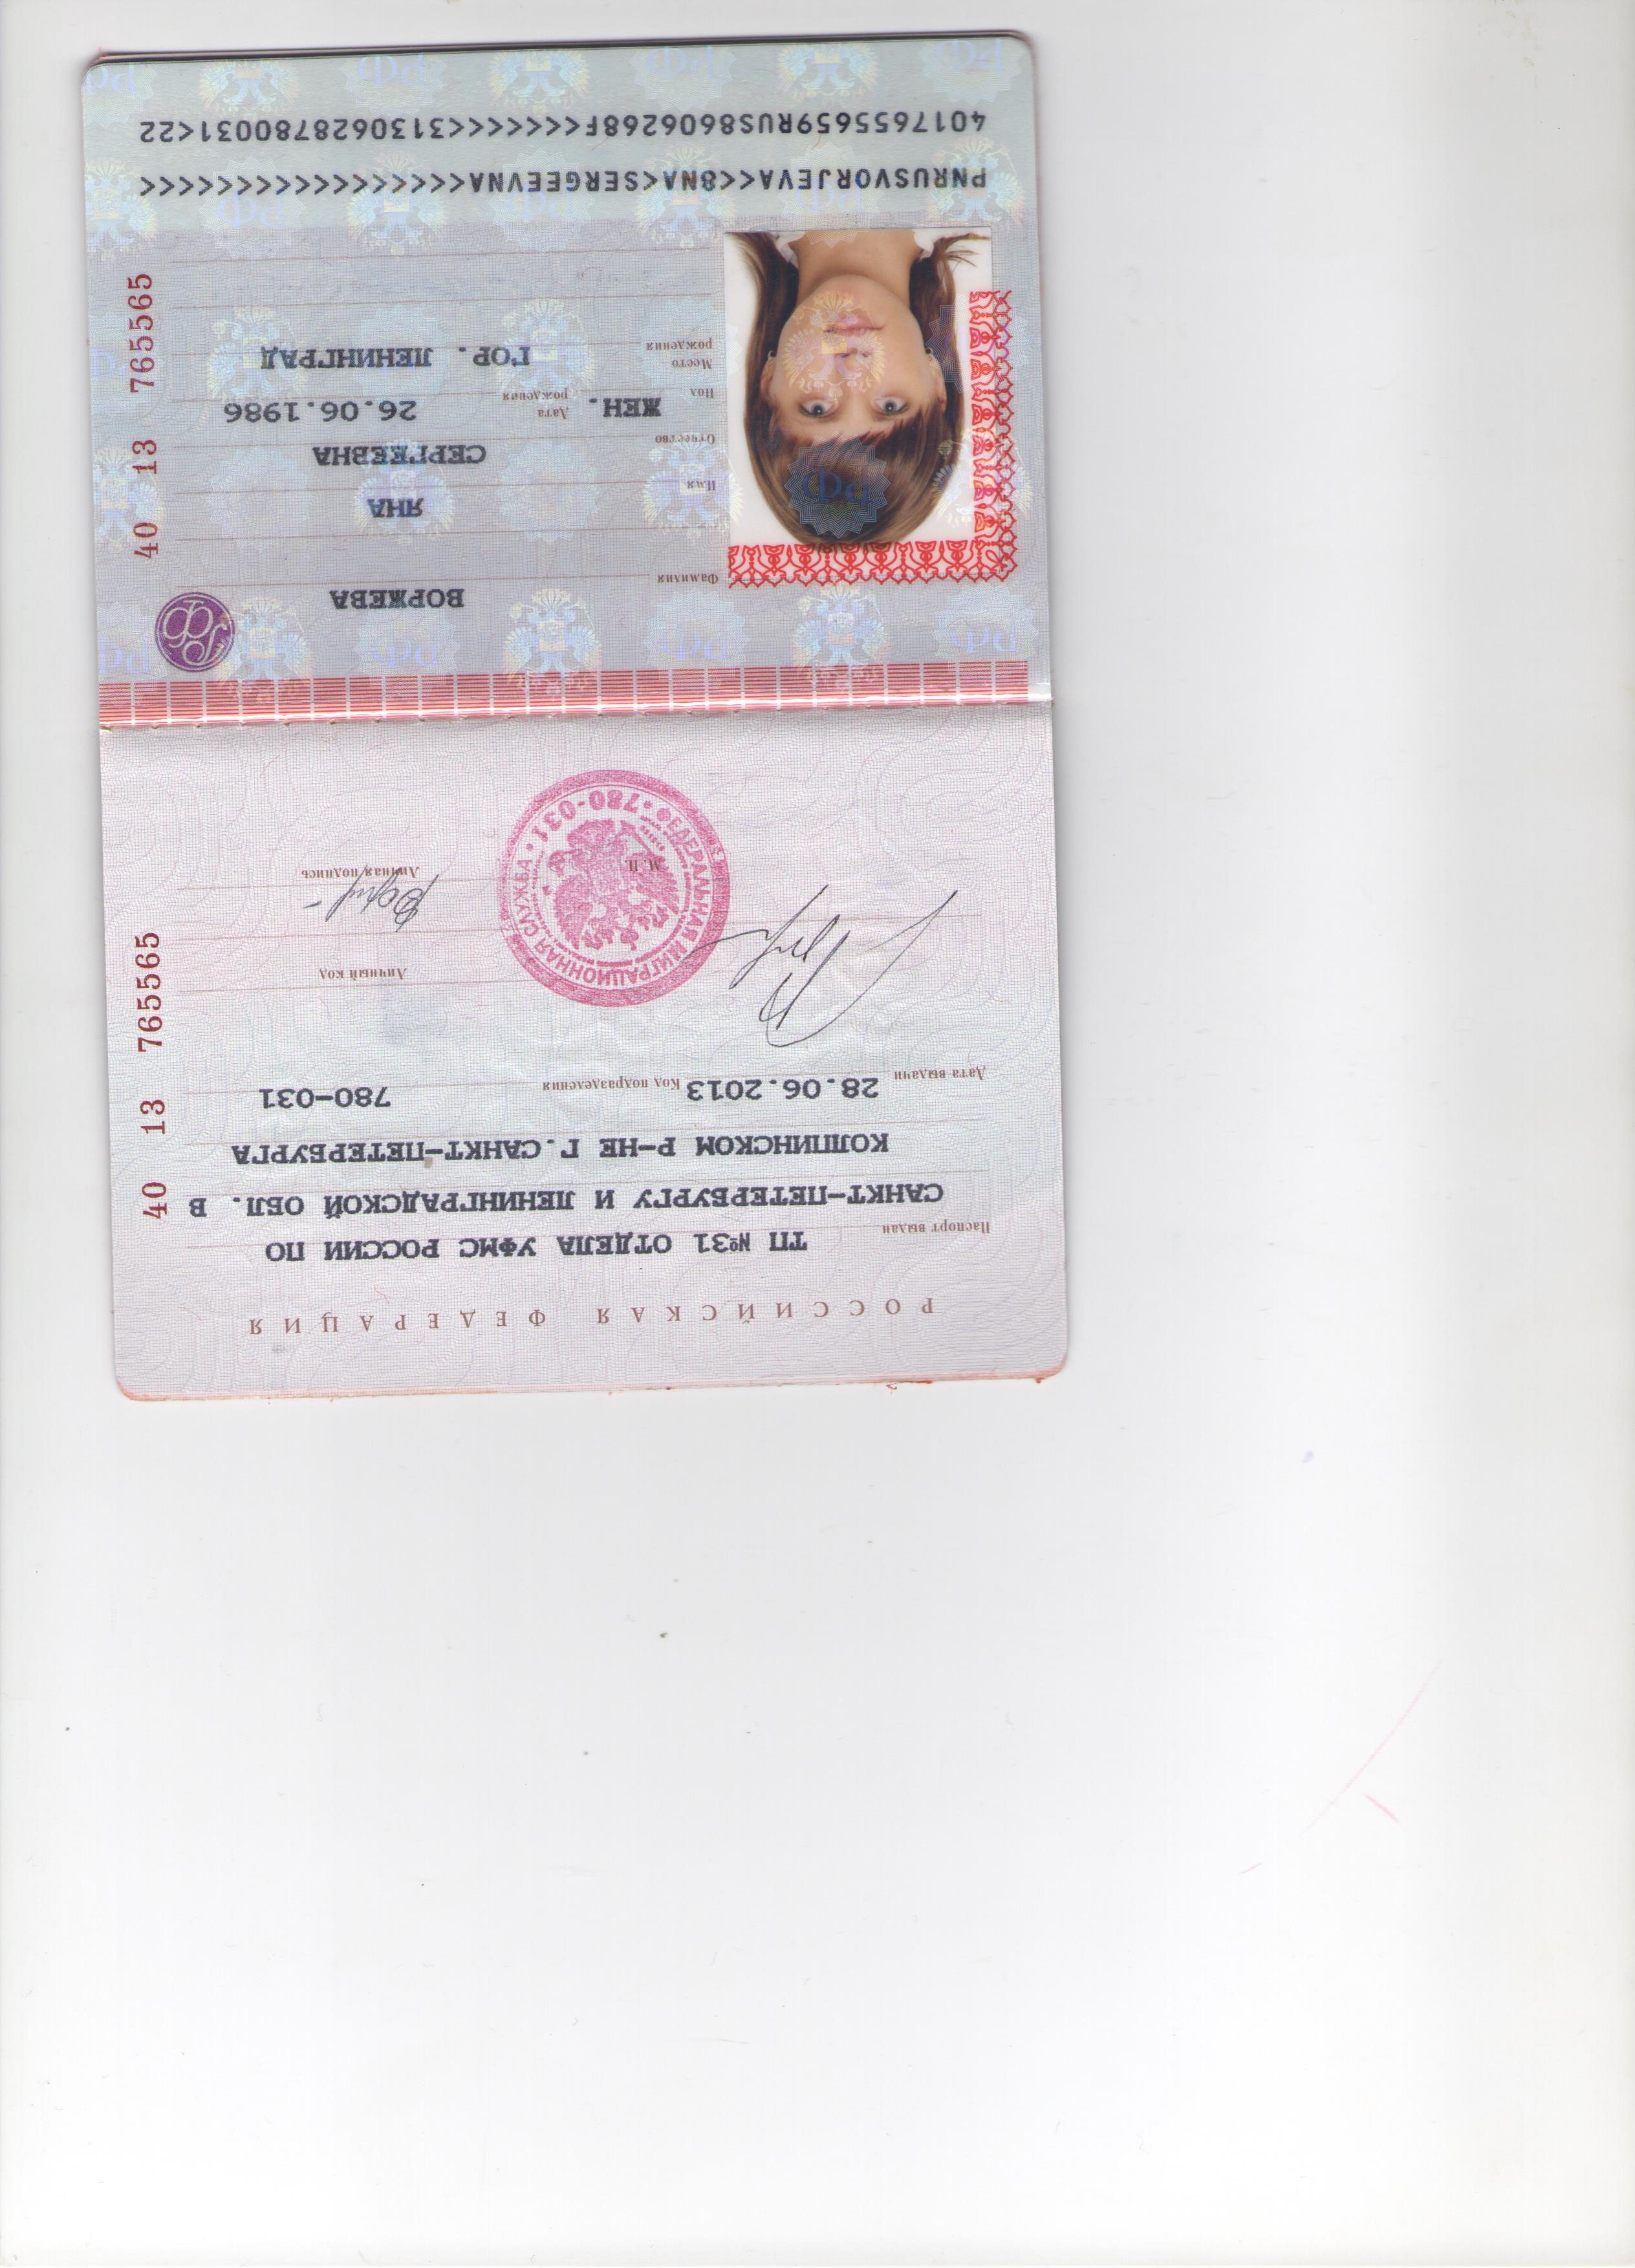 Скан паспорта с регистрацией